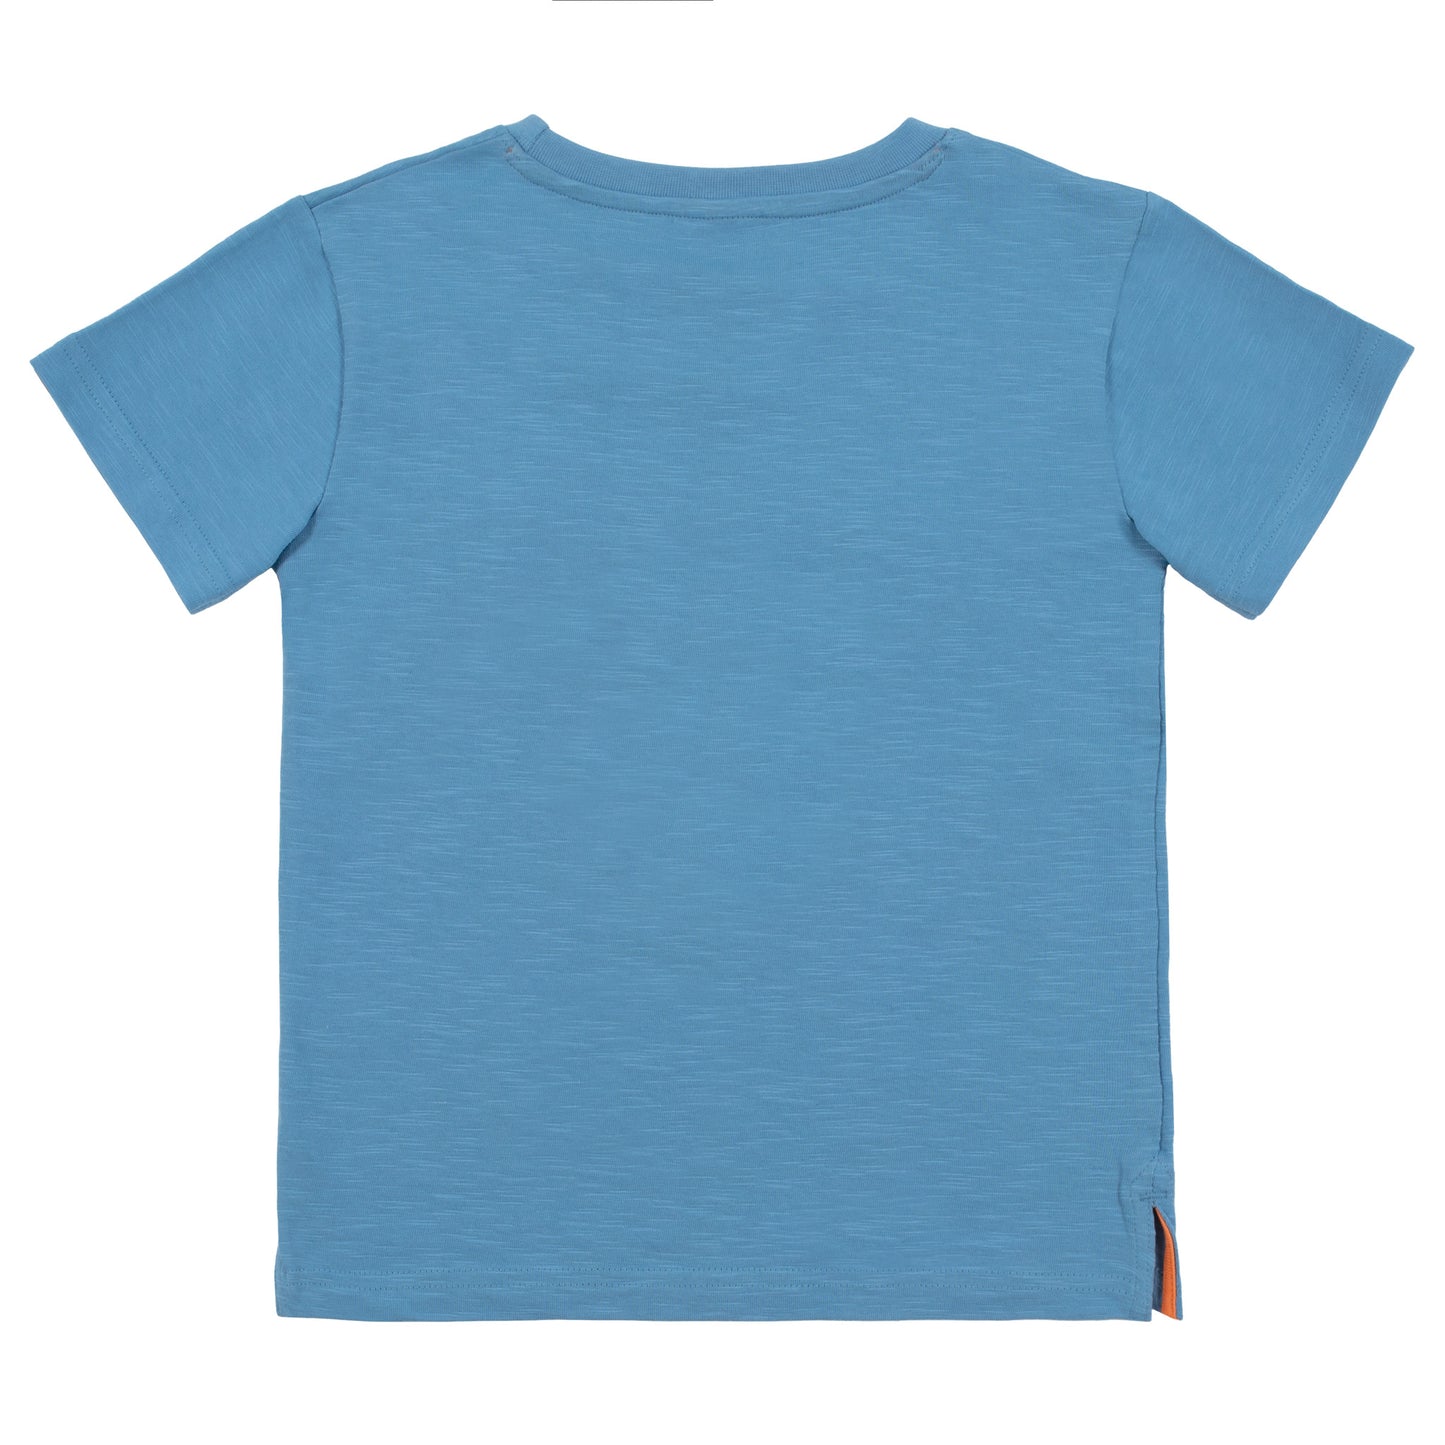 T-shirt - Cap sur la méditerranée- S2401-02 - 2 à 10 ans